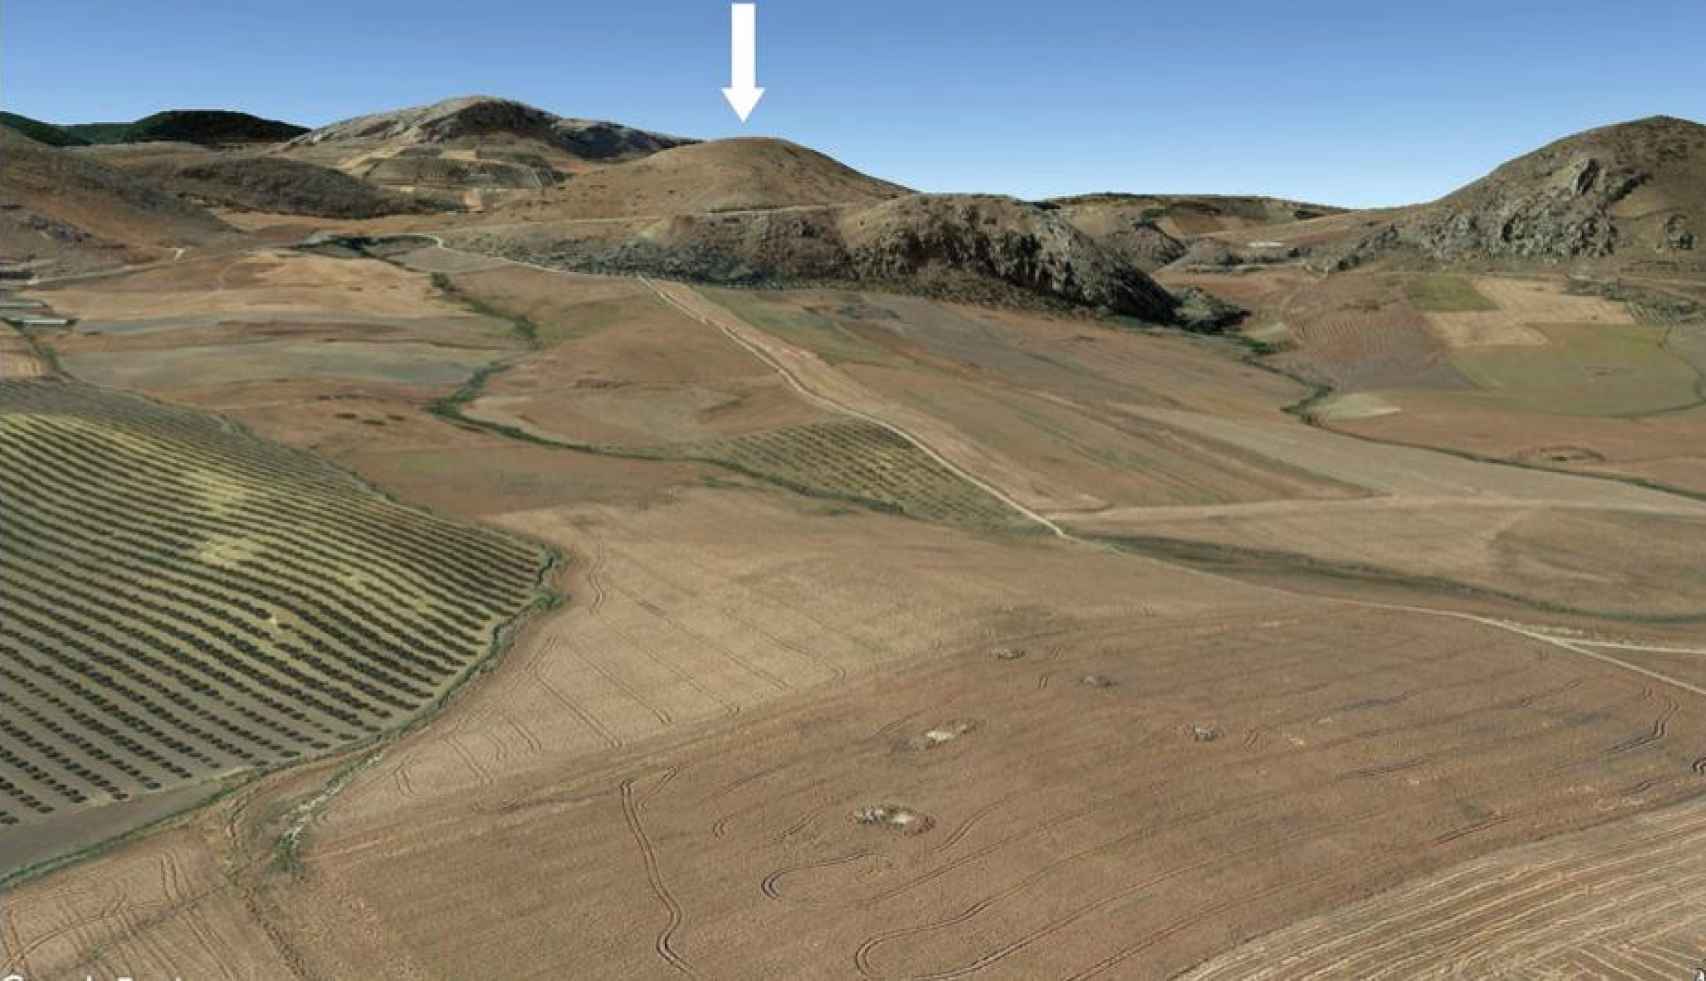 Campos de El Carrascal desde el aire señalando el cerro del oppidum